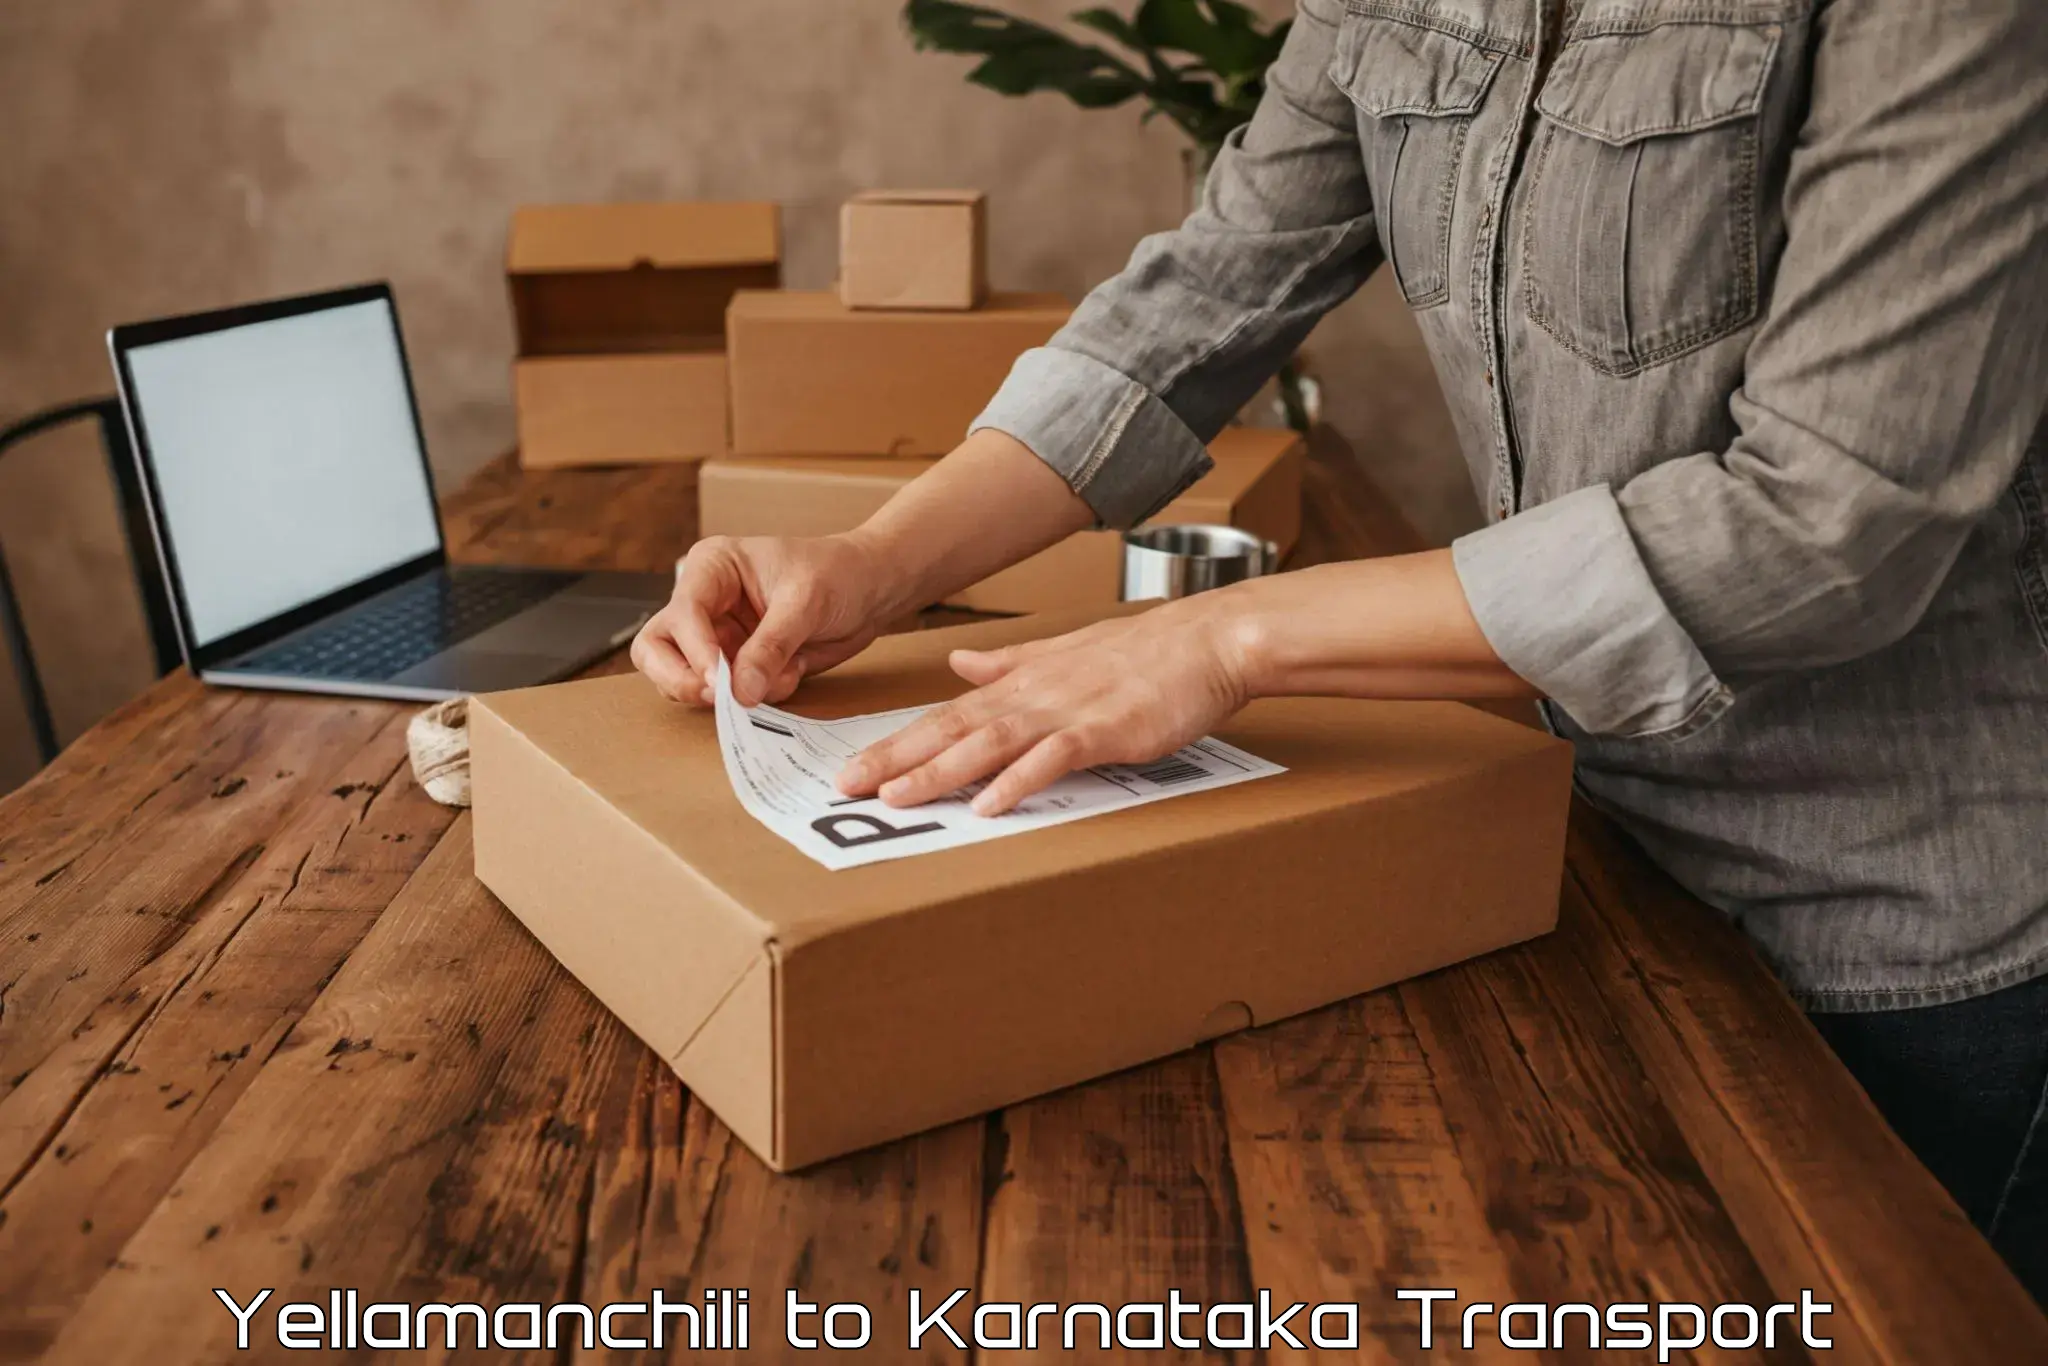 Online transport in Yellamanchili to Kanjarakatte